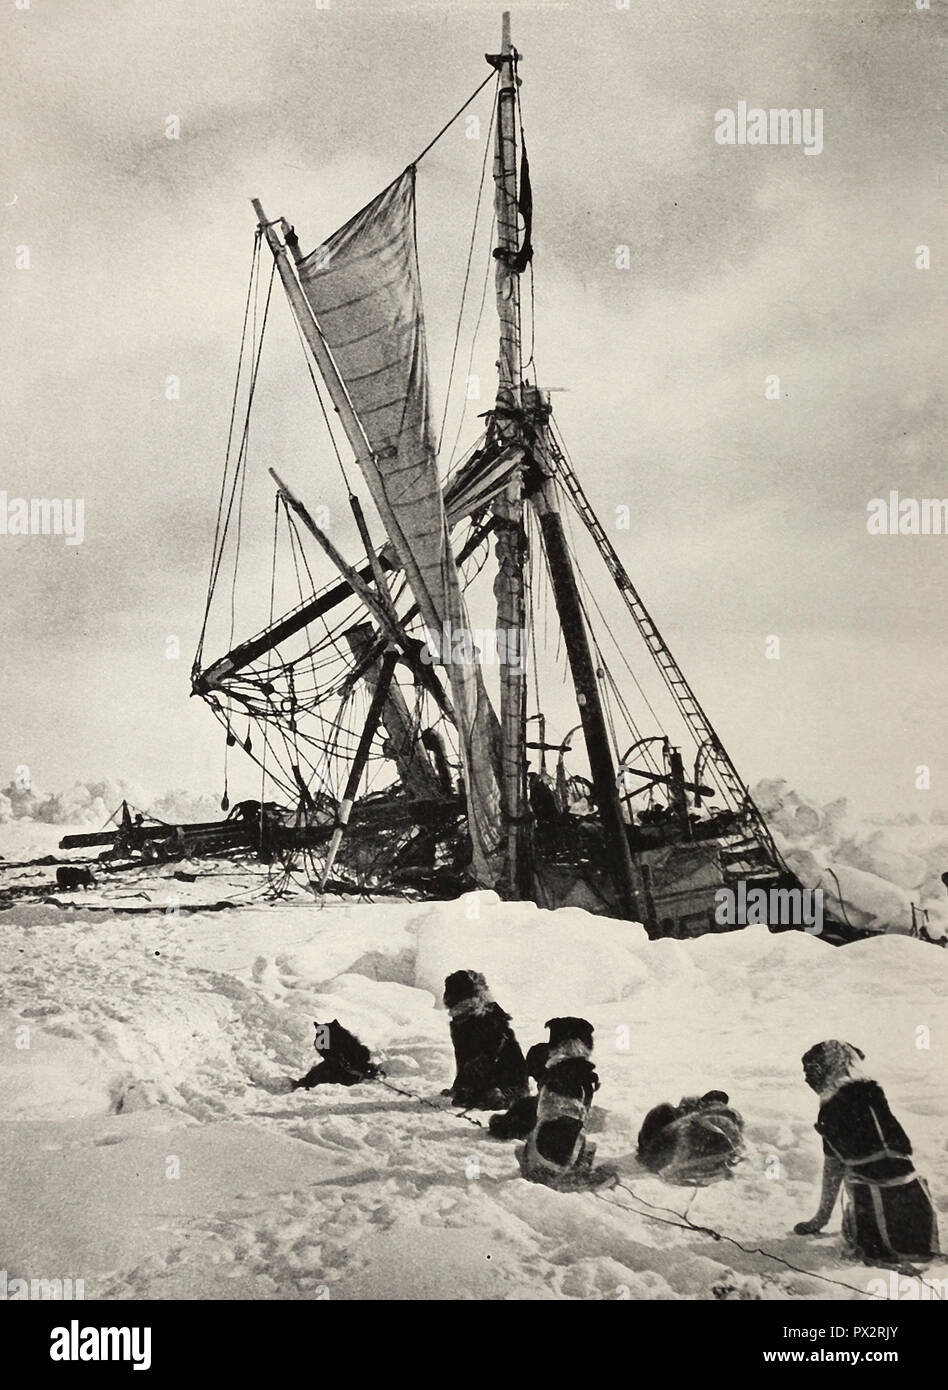 L'Endurance mort écrasé par des accumulateurs de la Wendell Mer pendant l'expédition de Shackleton Banque D'Images